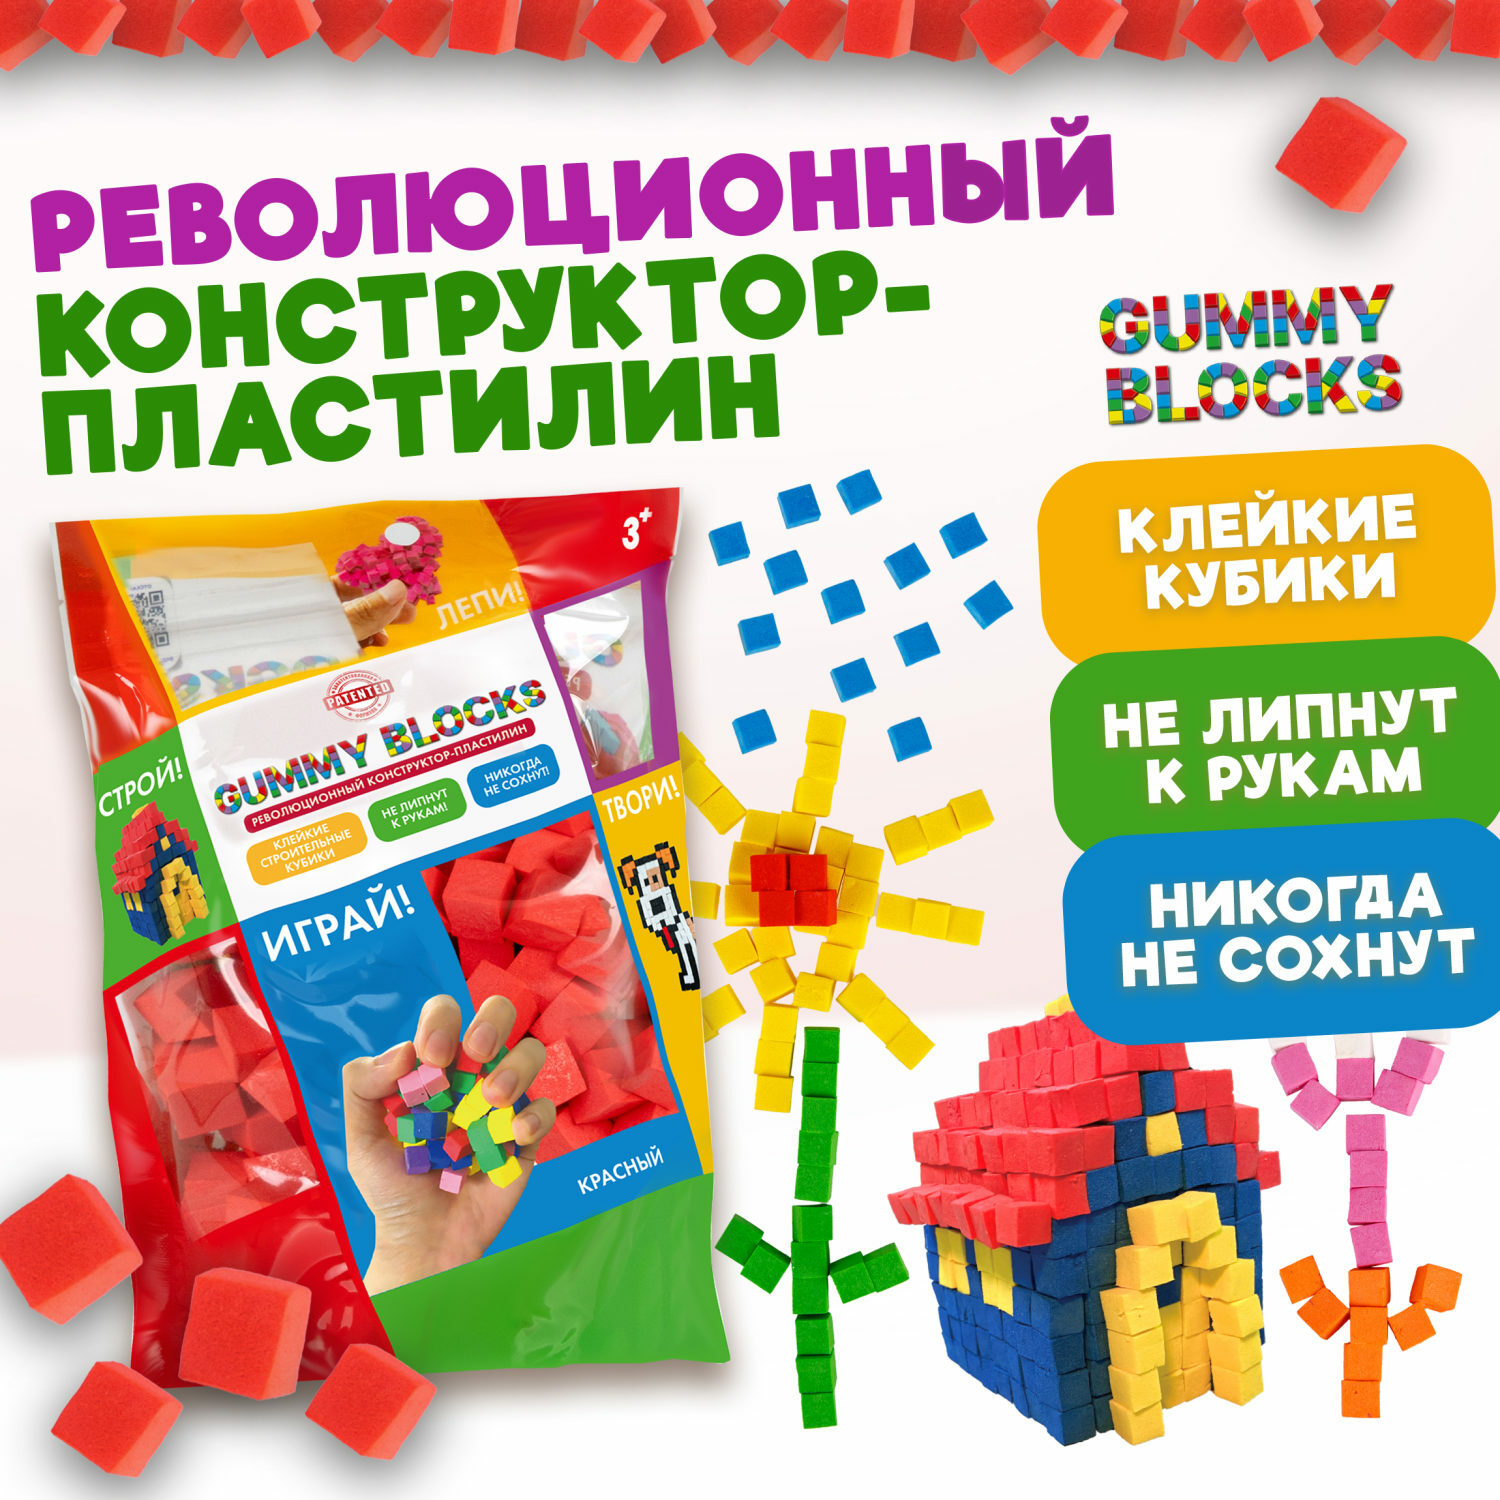 Конструктор пластилин 1TOY Gummy blocks антистресс красный - фото 2